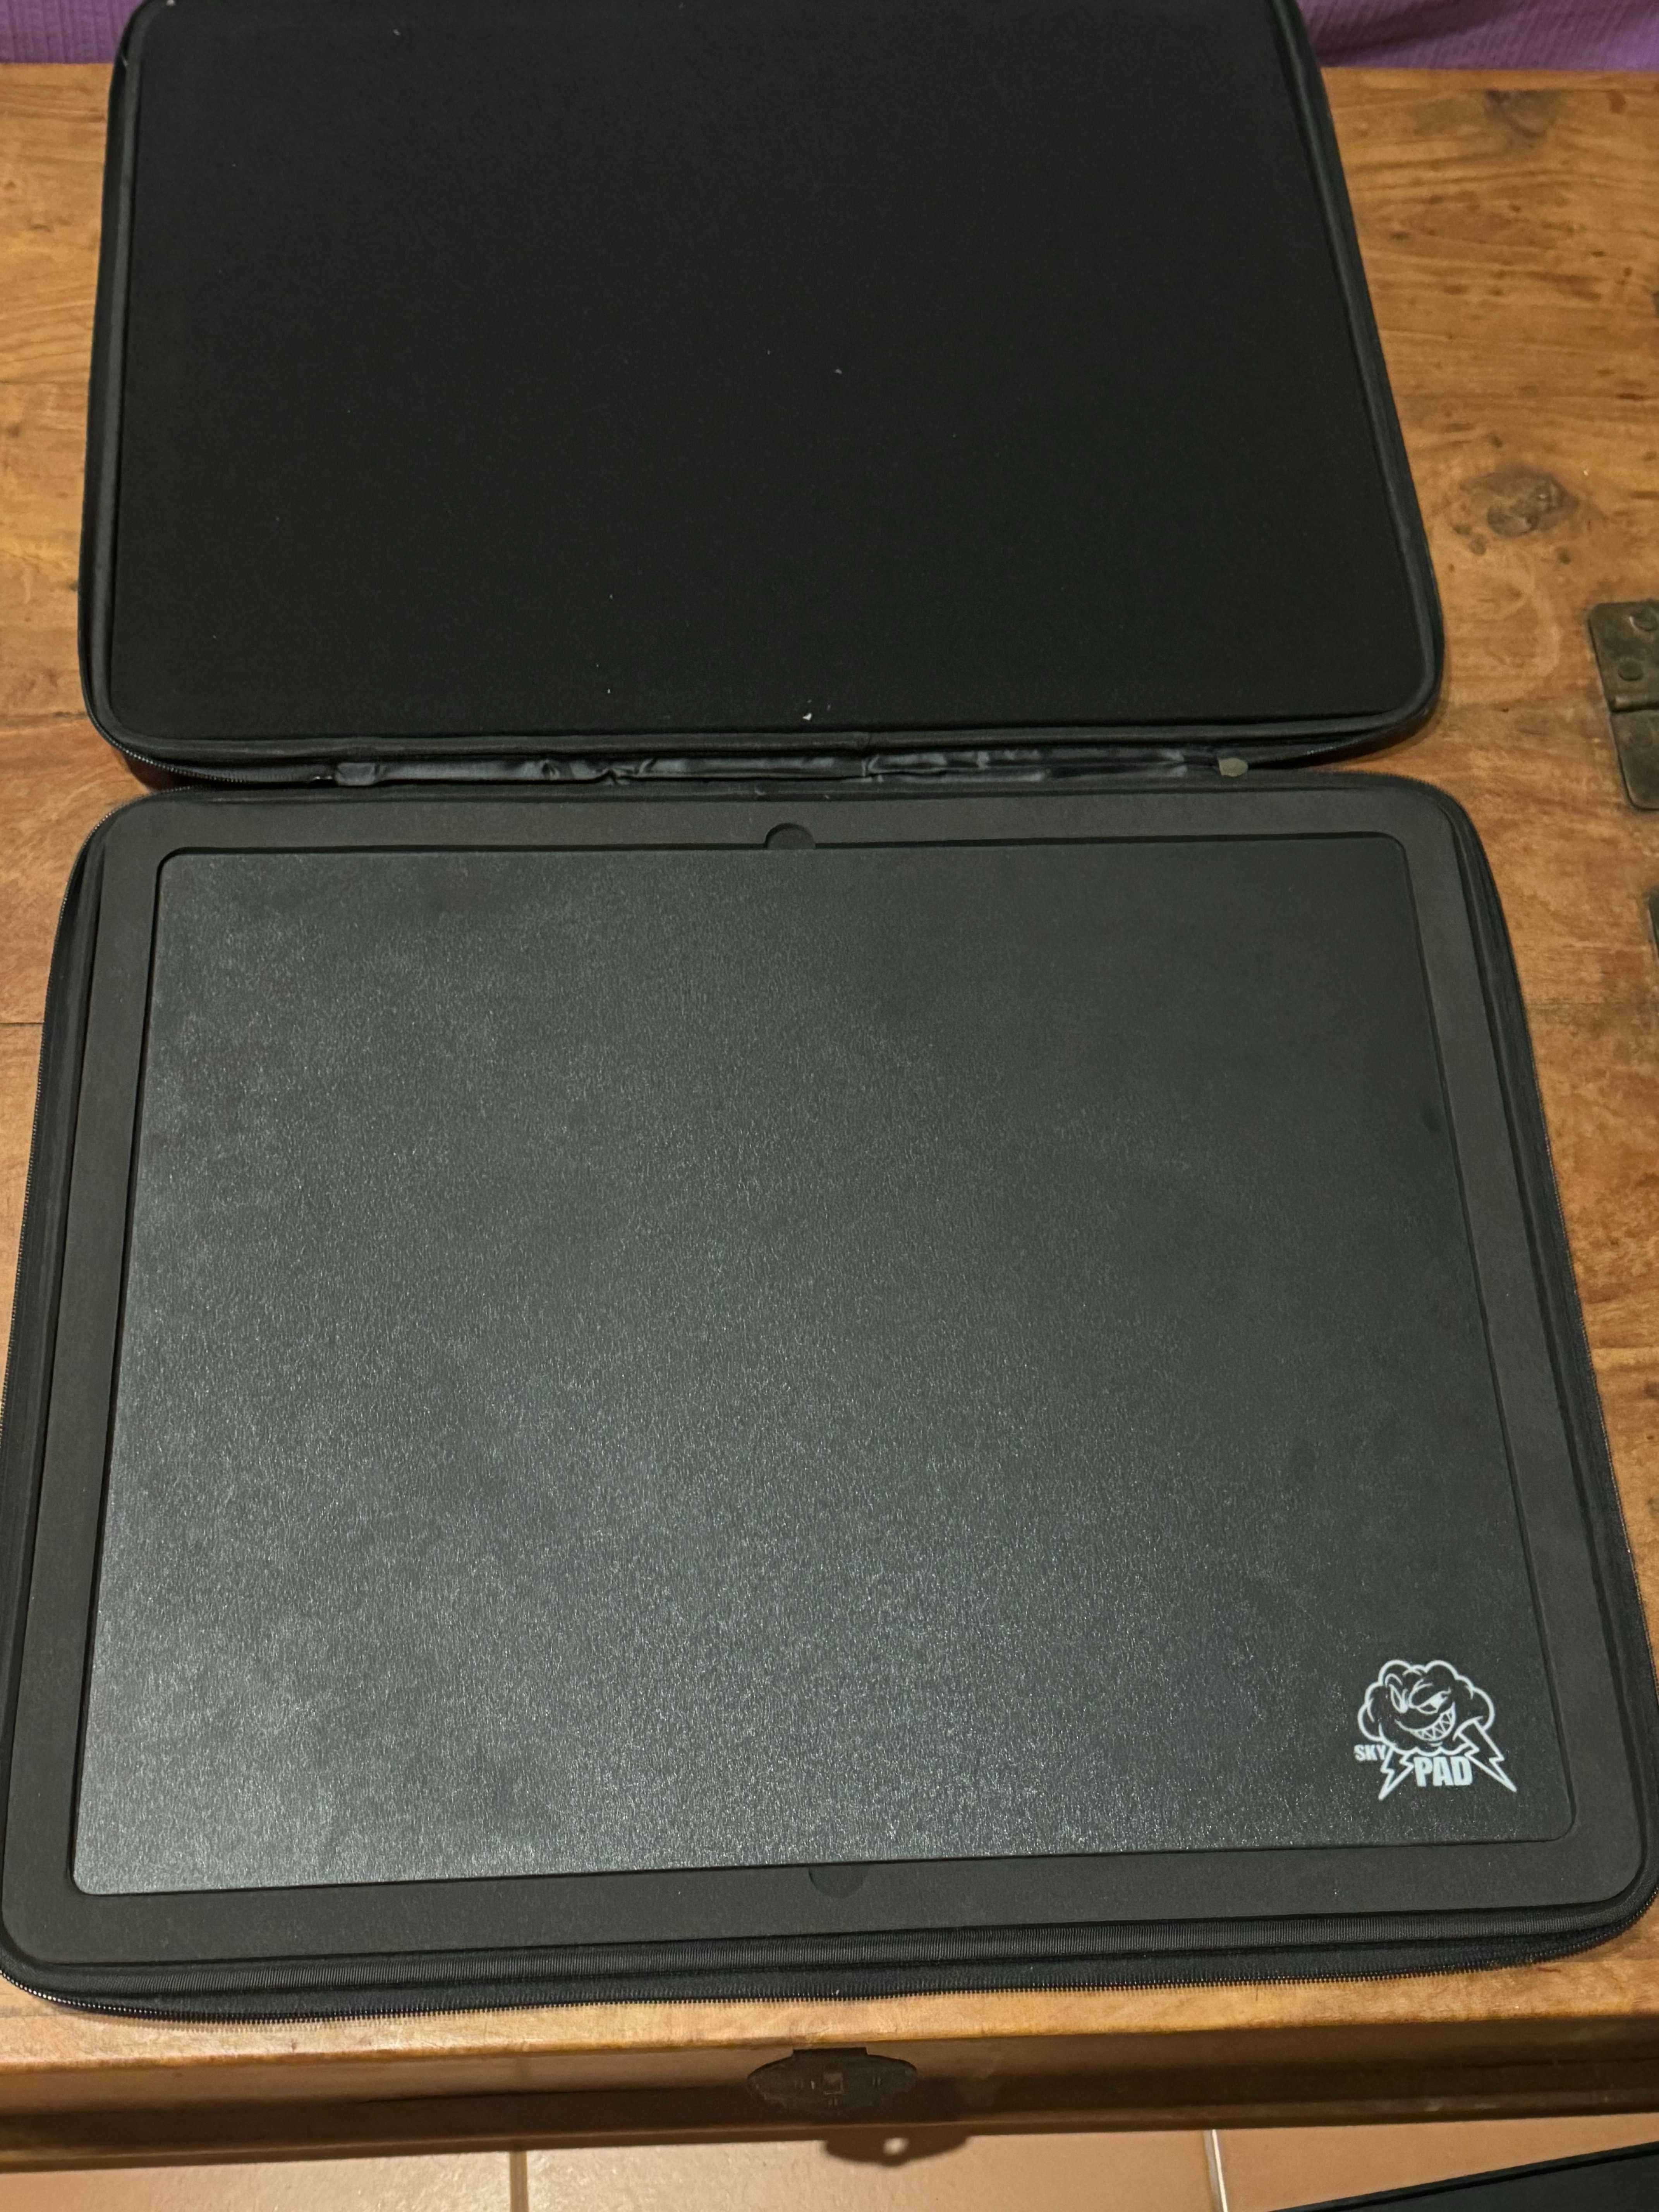 Skypad XL 3.0 Preto com Carrying case